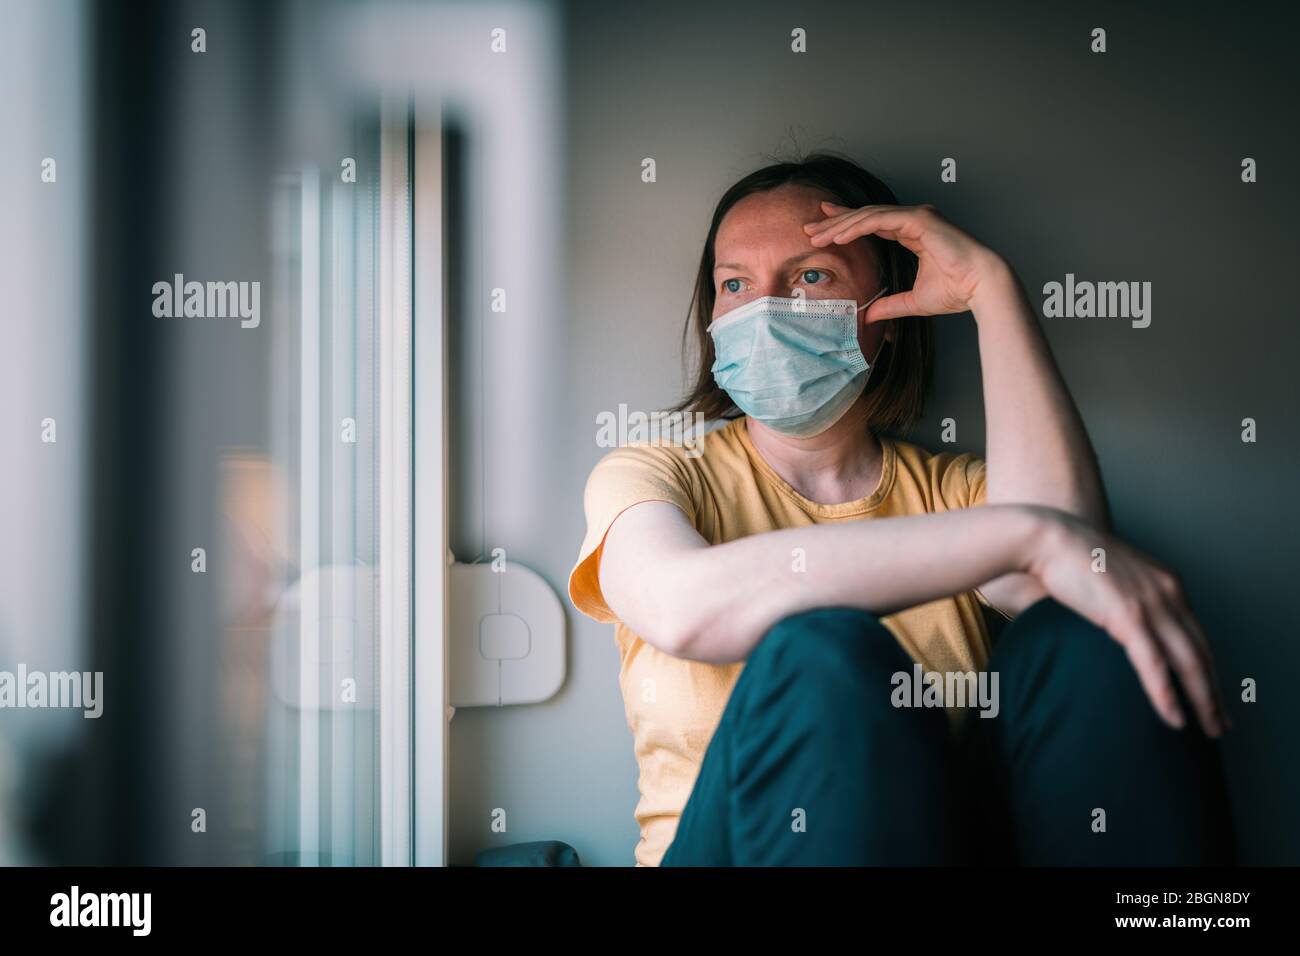 Frau in Selbstisolation während des Virenausbruchs, die durch das Fenster schaut. Besorgte weibliche Person mit schützenden chirurgischen Maske in zu Hause bleiben Konzept, sel Stockfoto